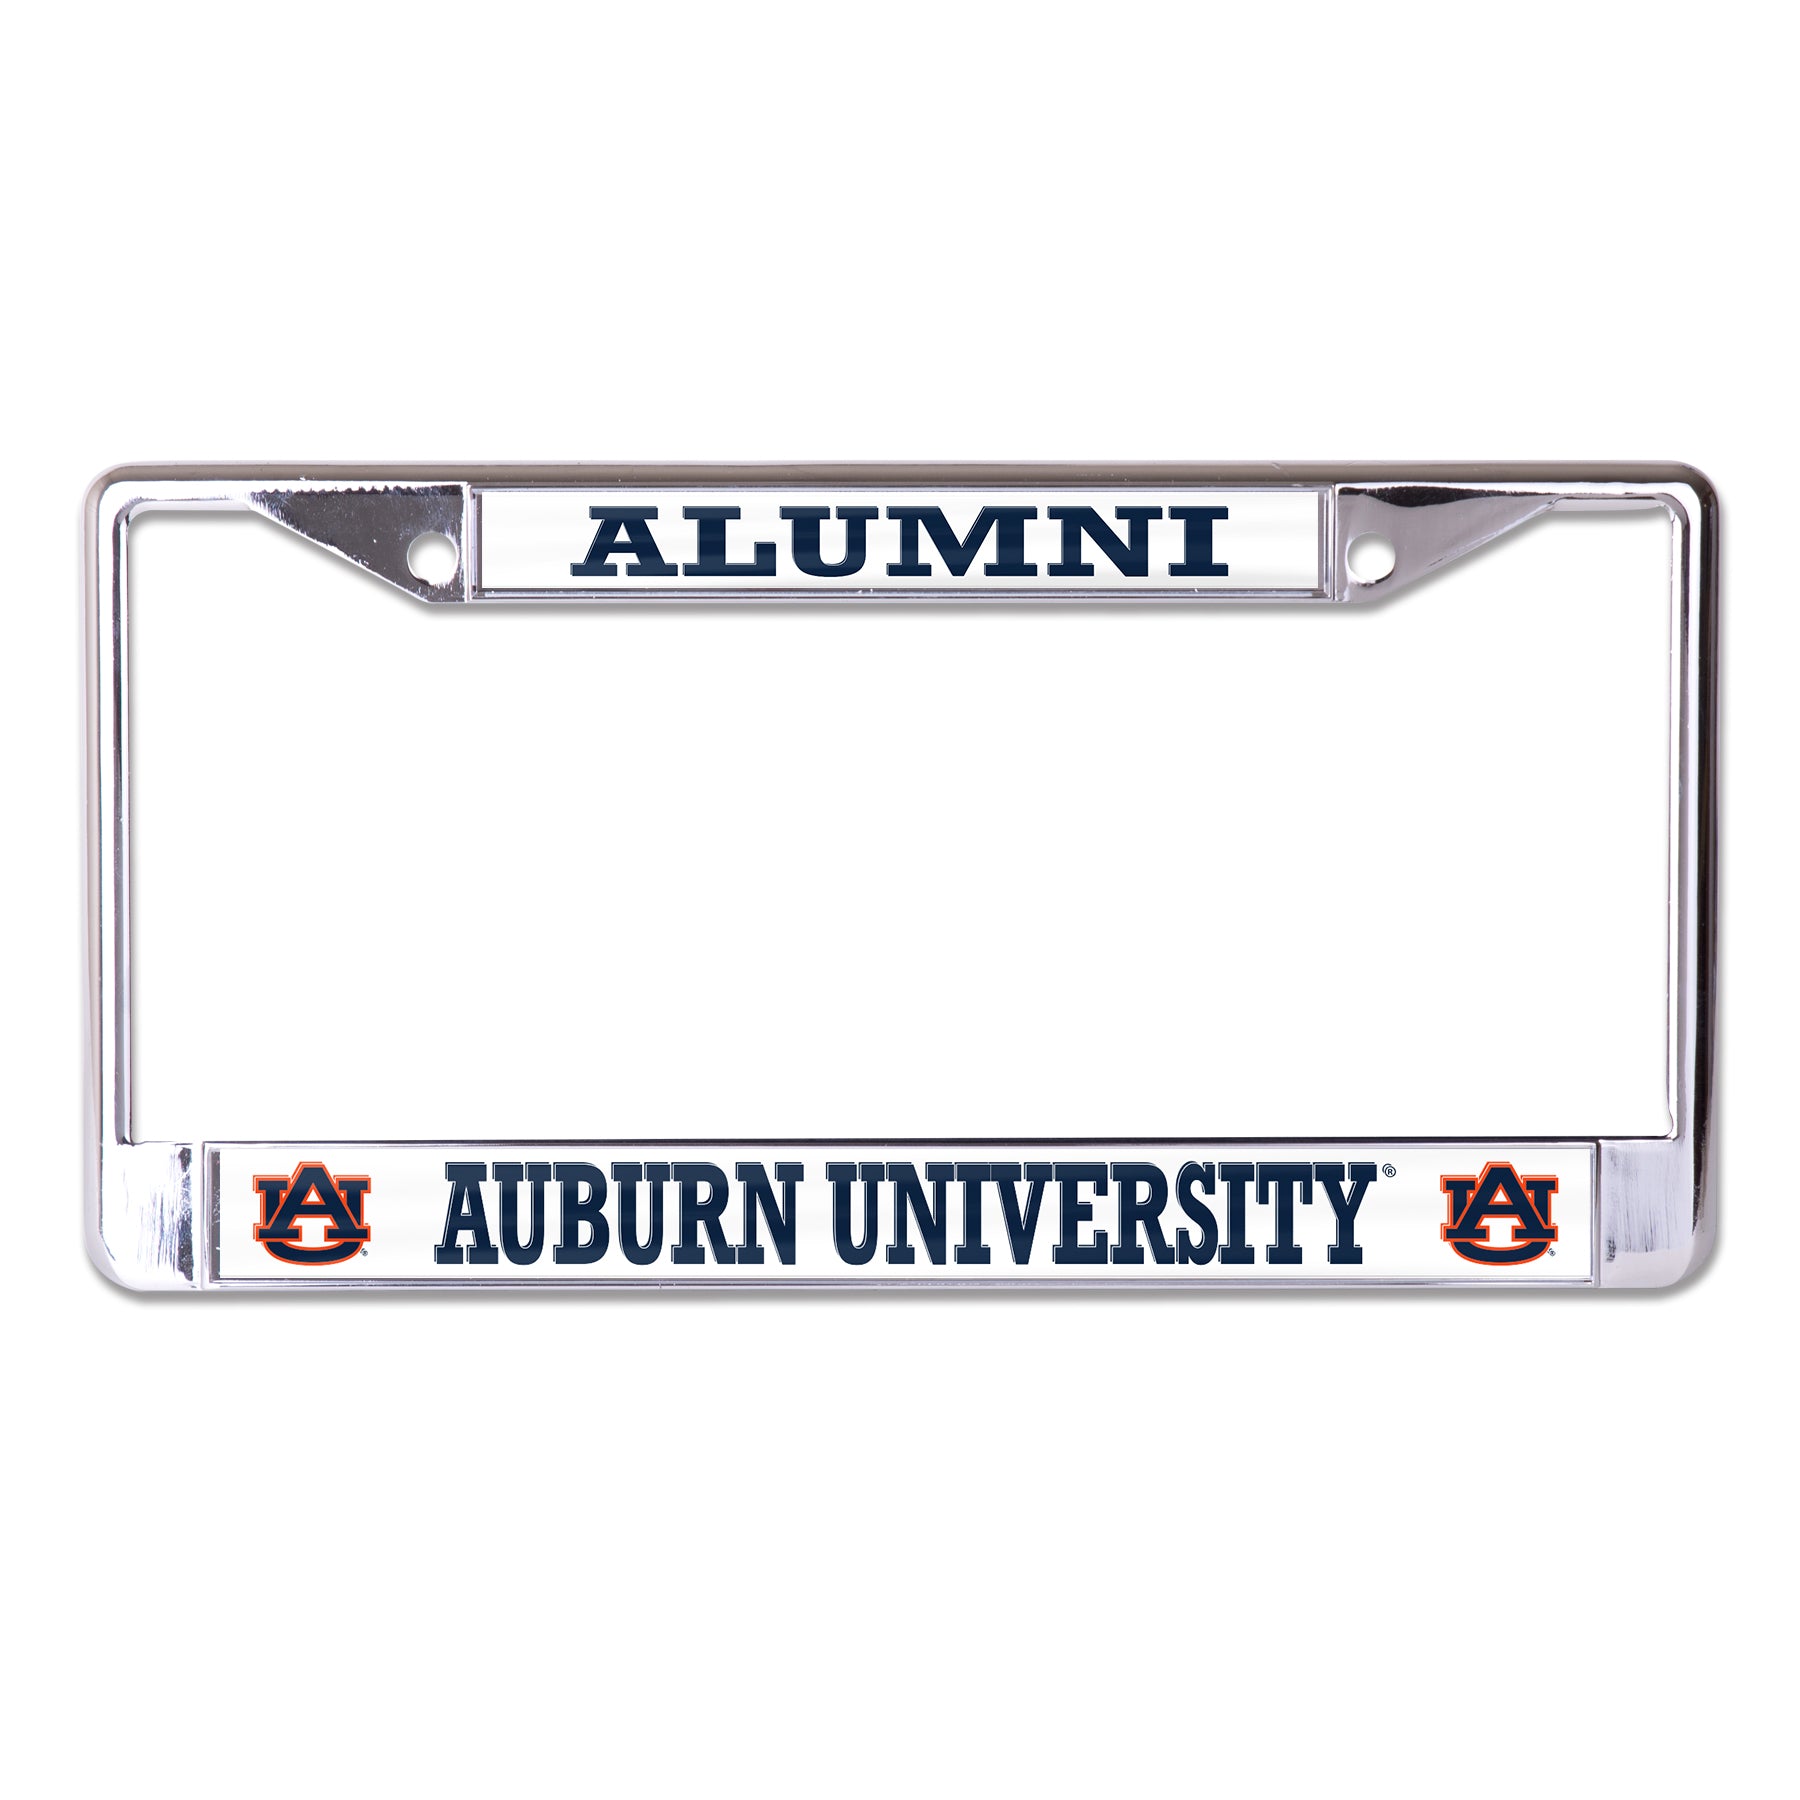 Auburn University Alumni On White Background Chrome License Plate Frame